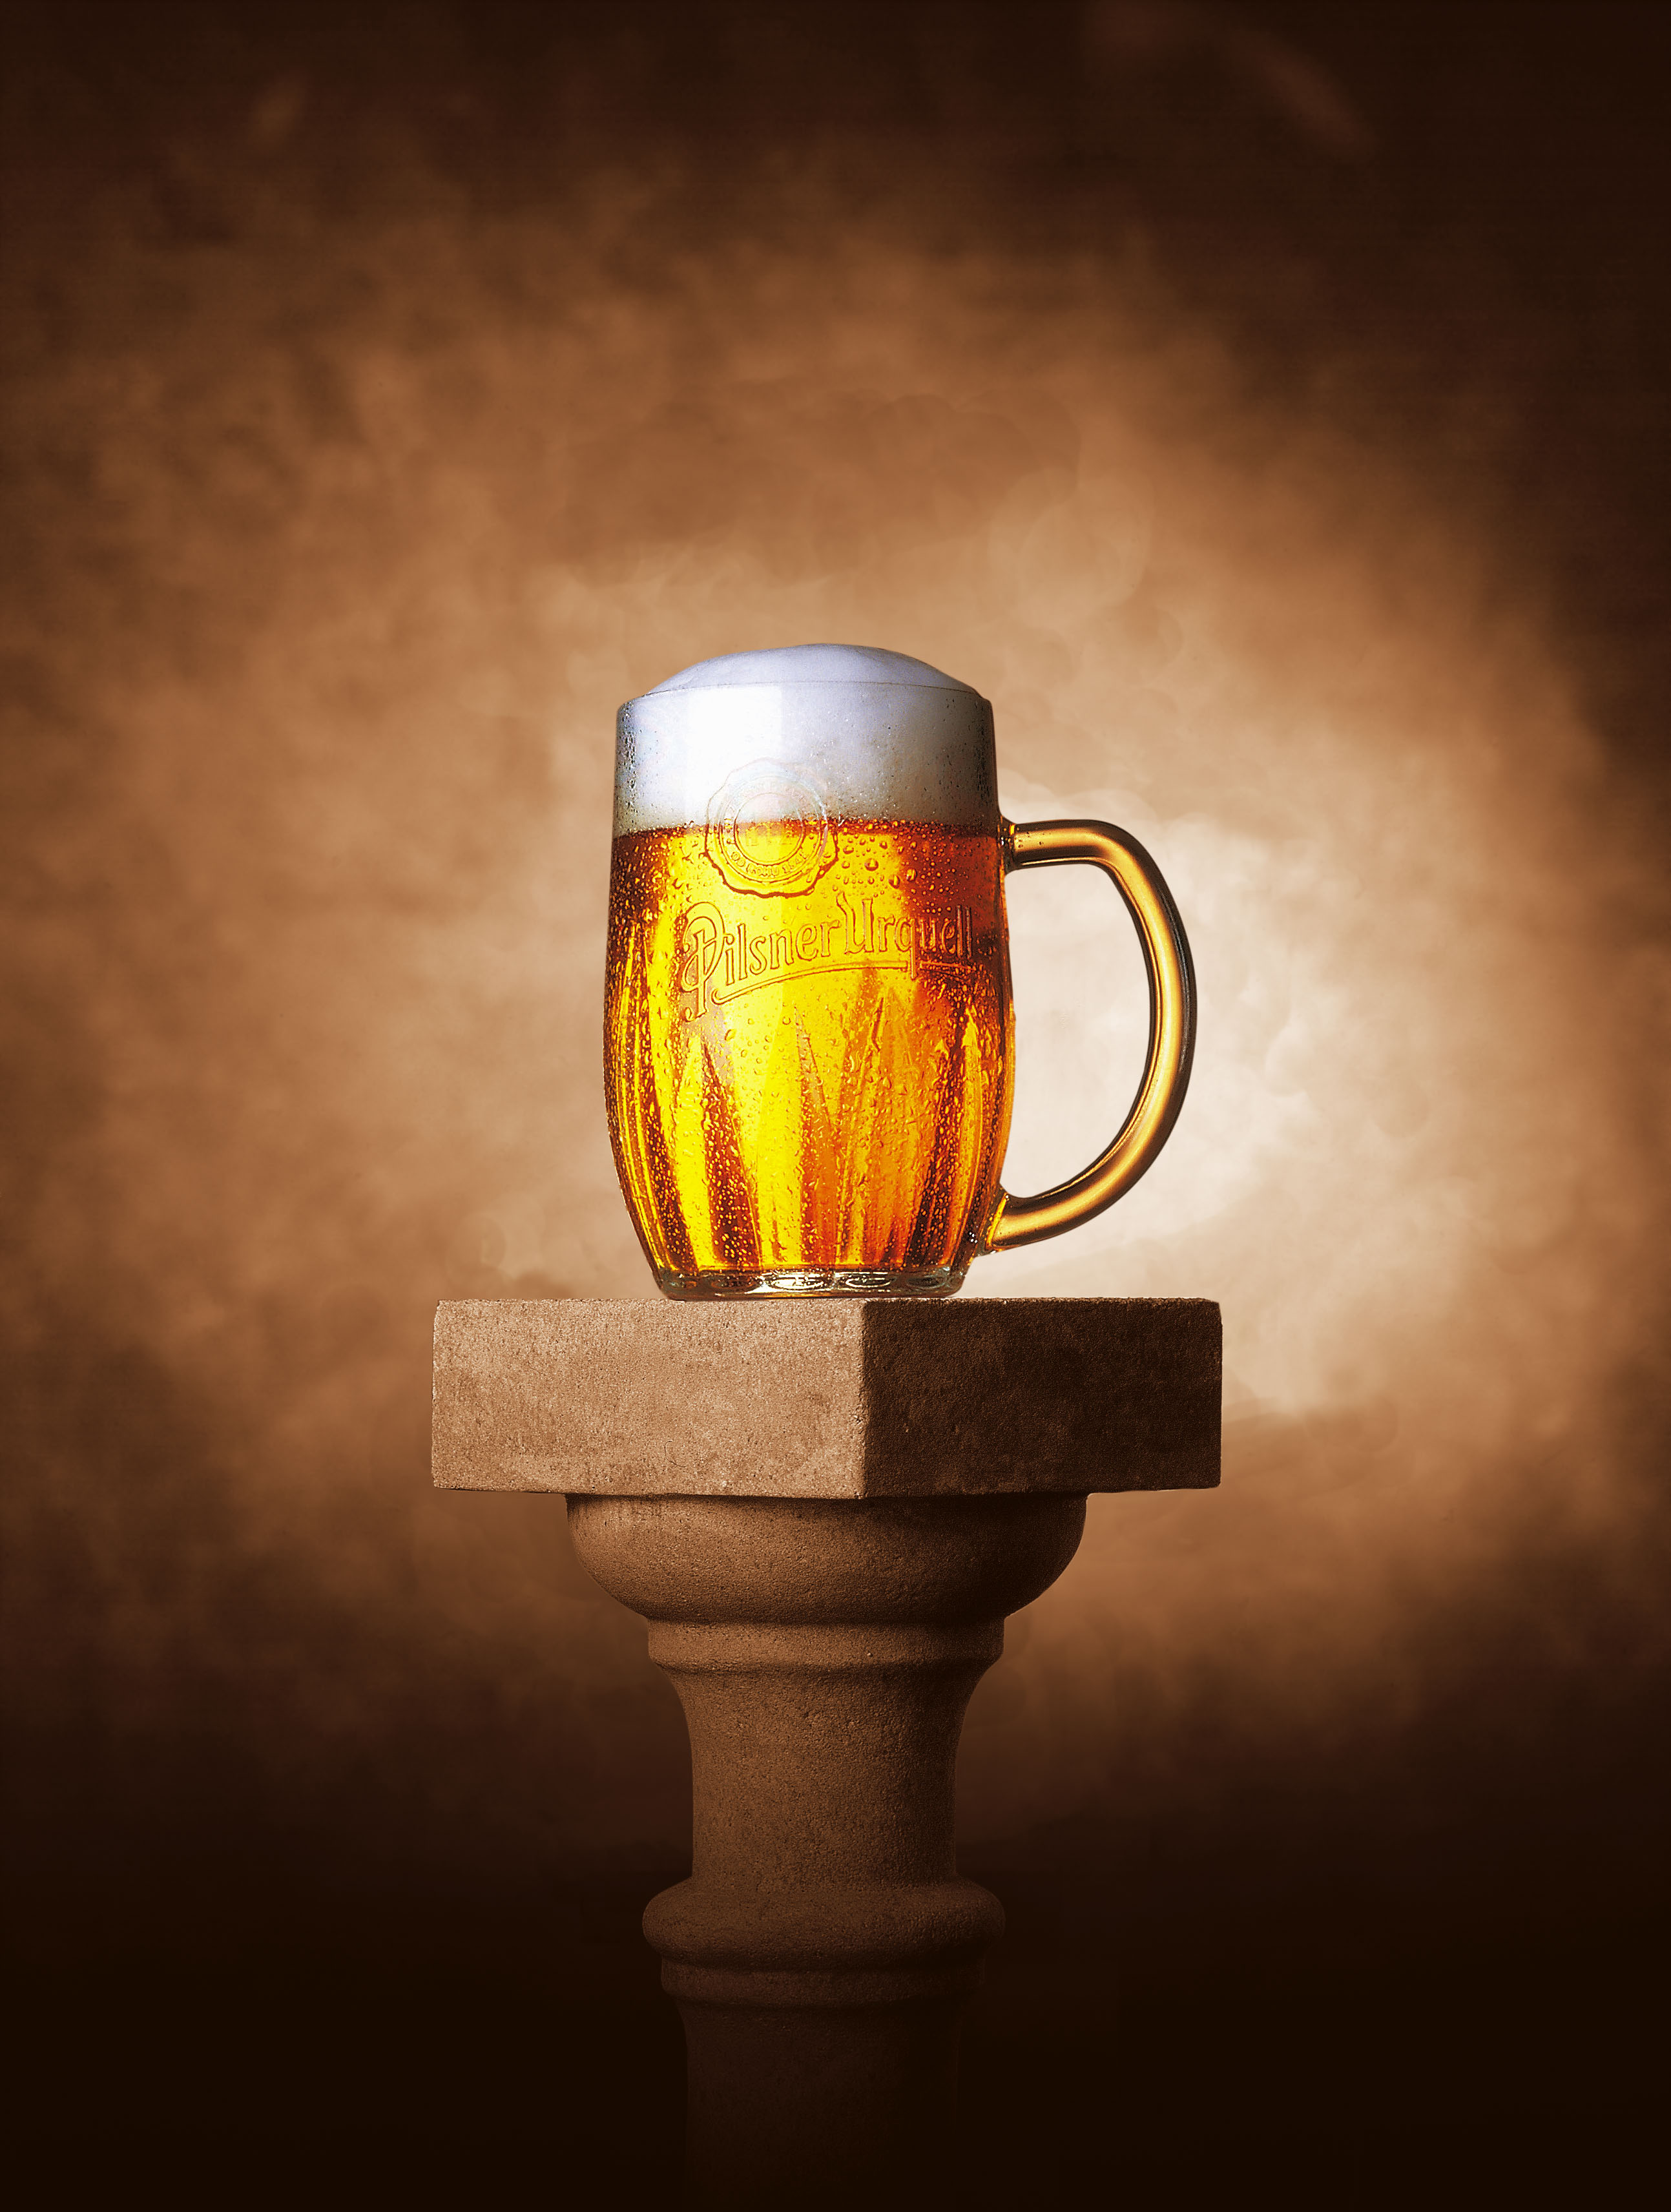 Календарь событий - «Международный день пива» - (1-7 августа)